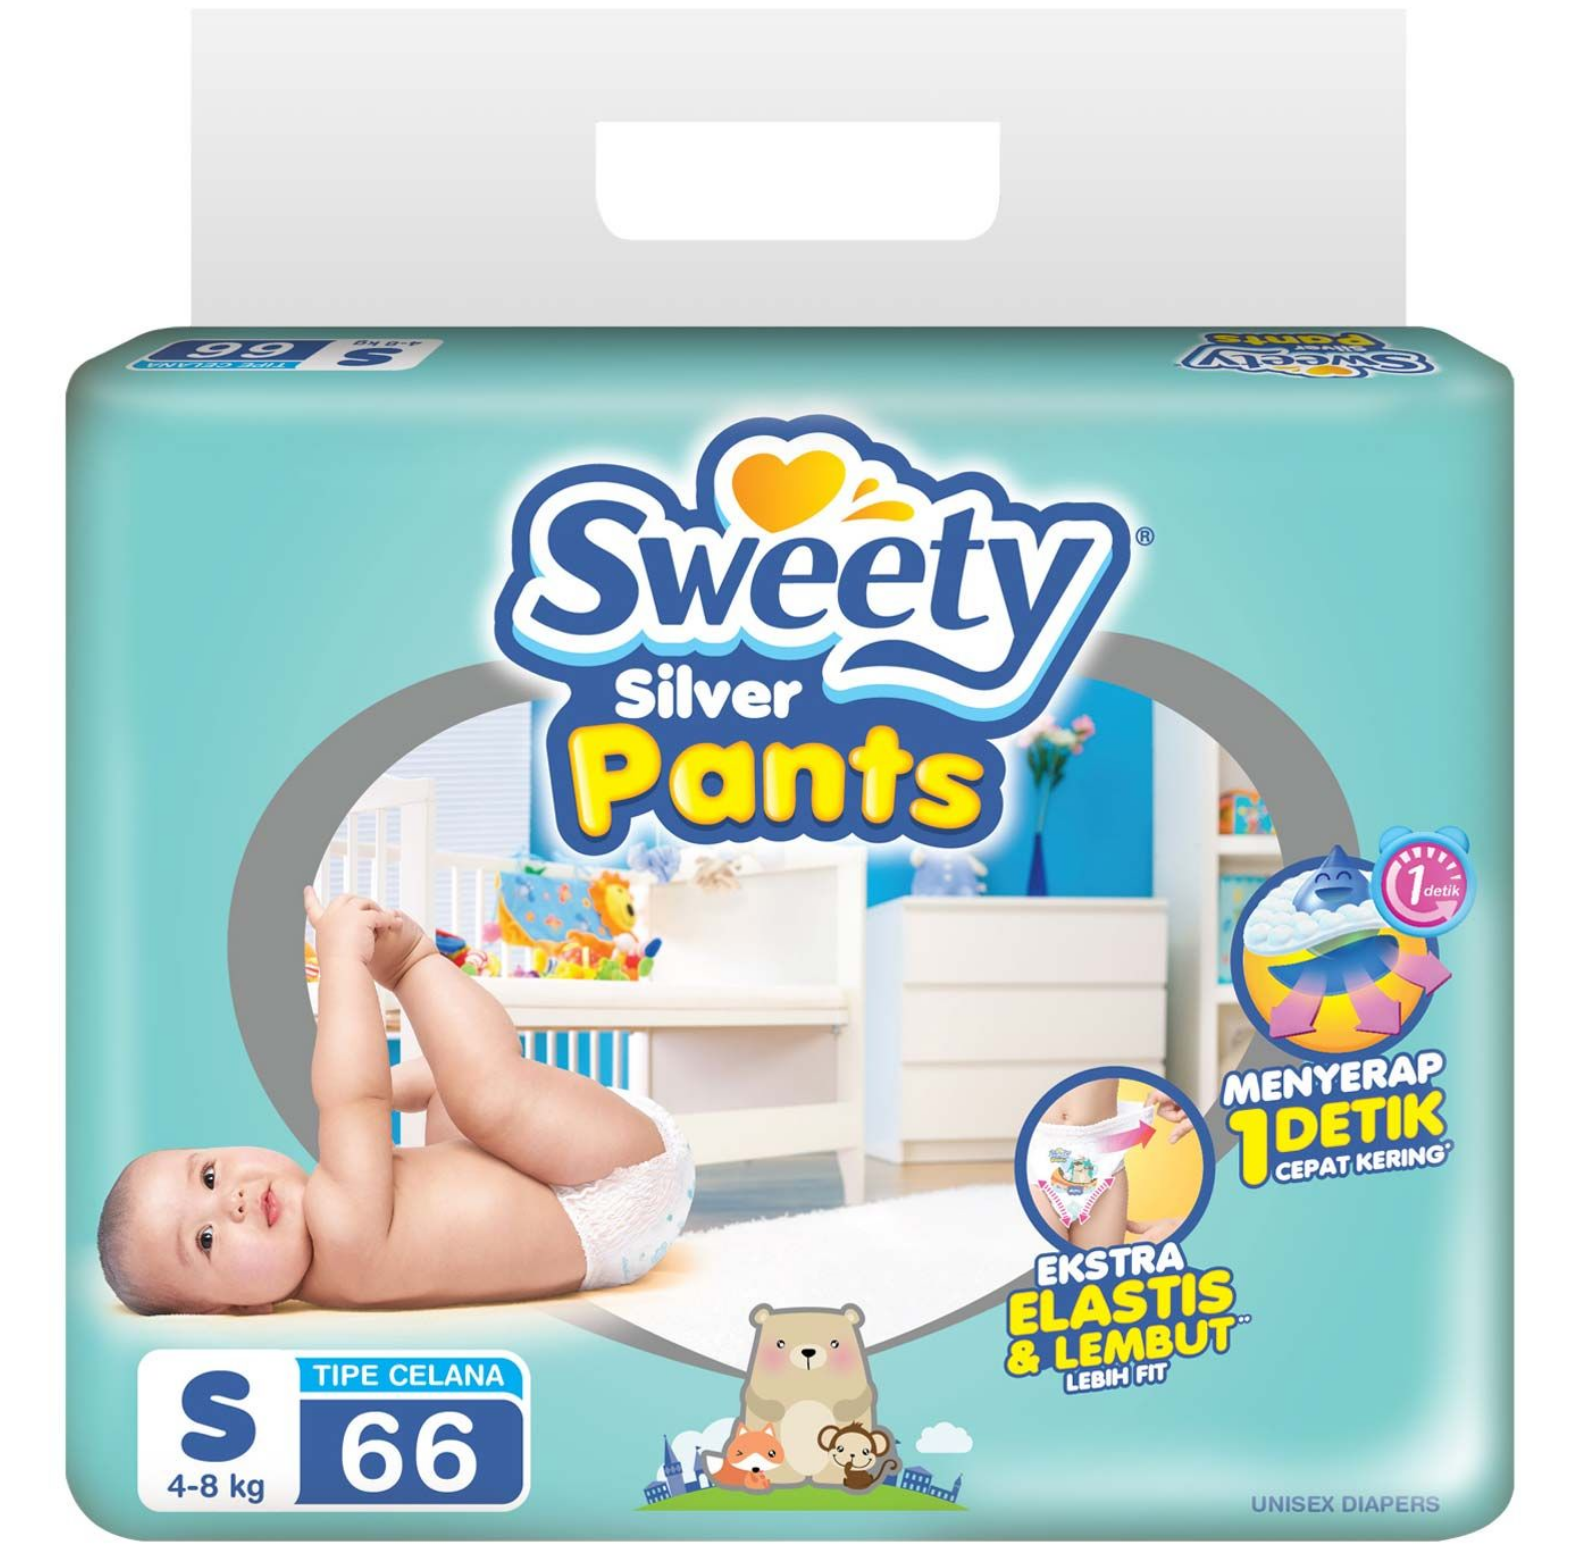 Sweety pants